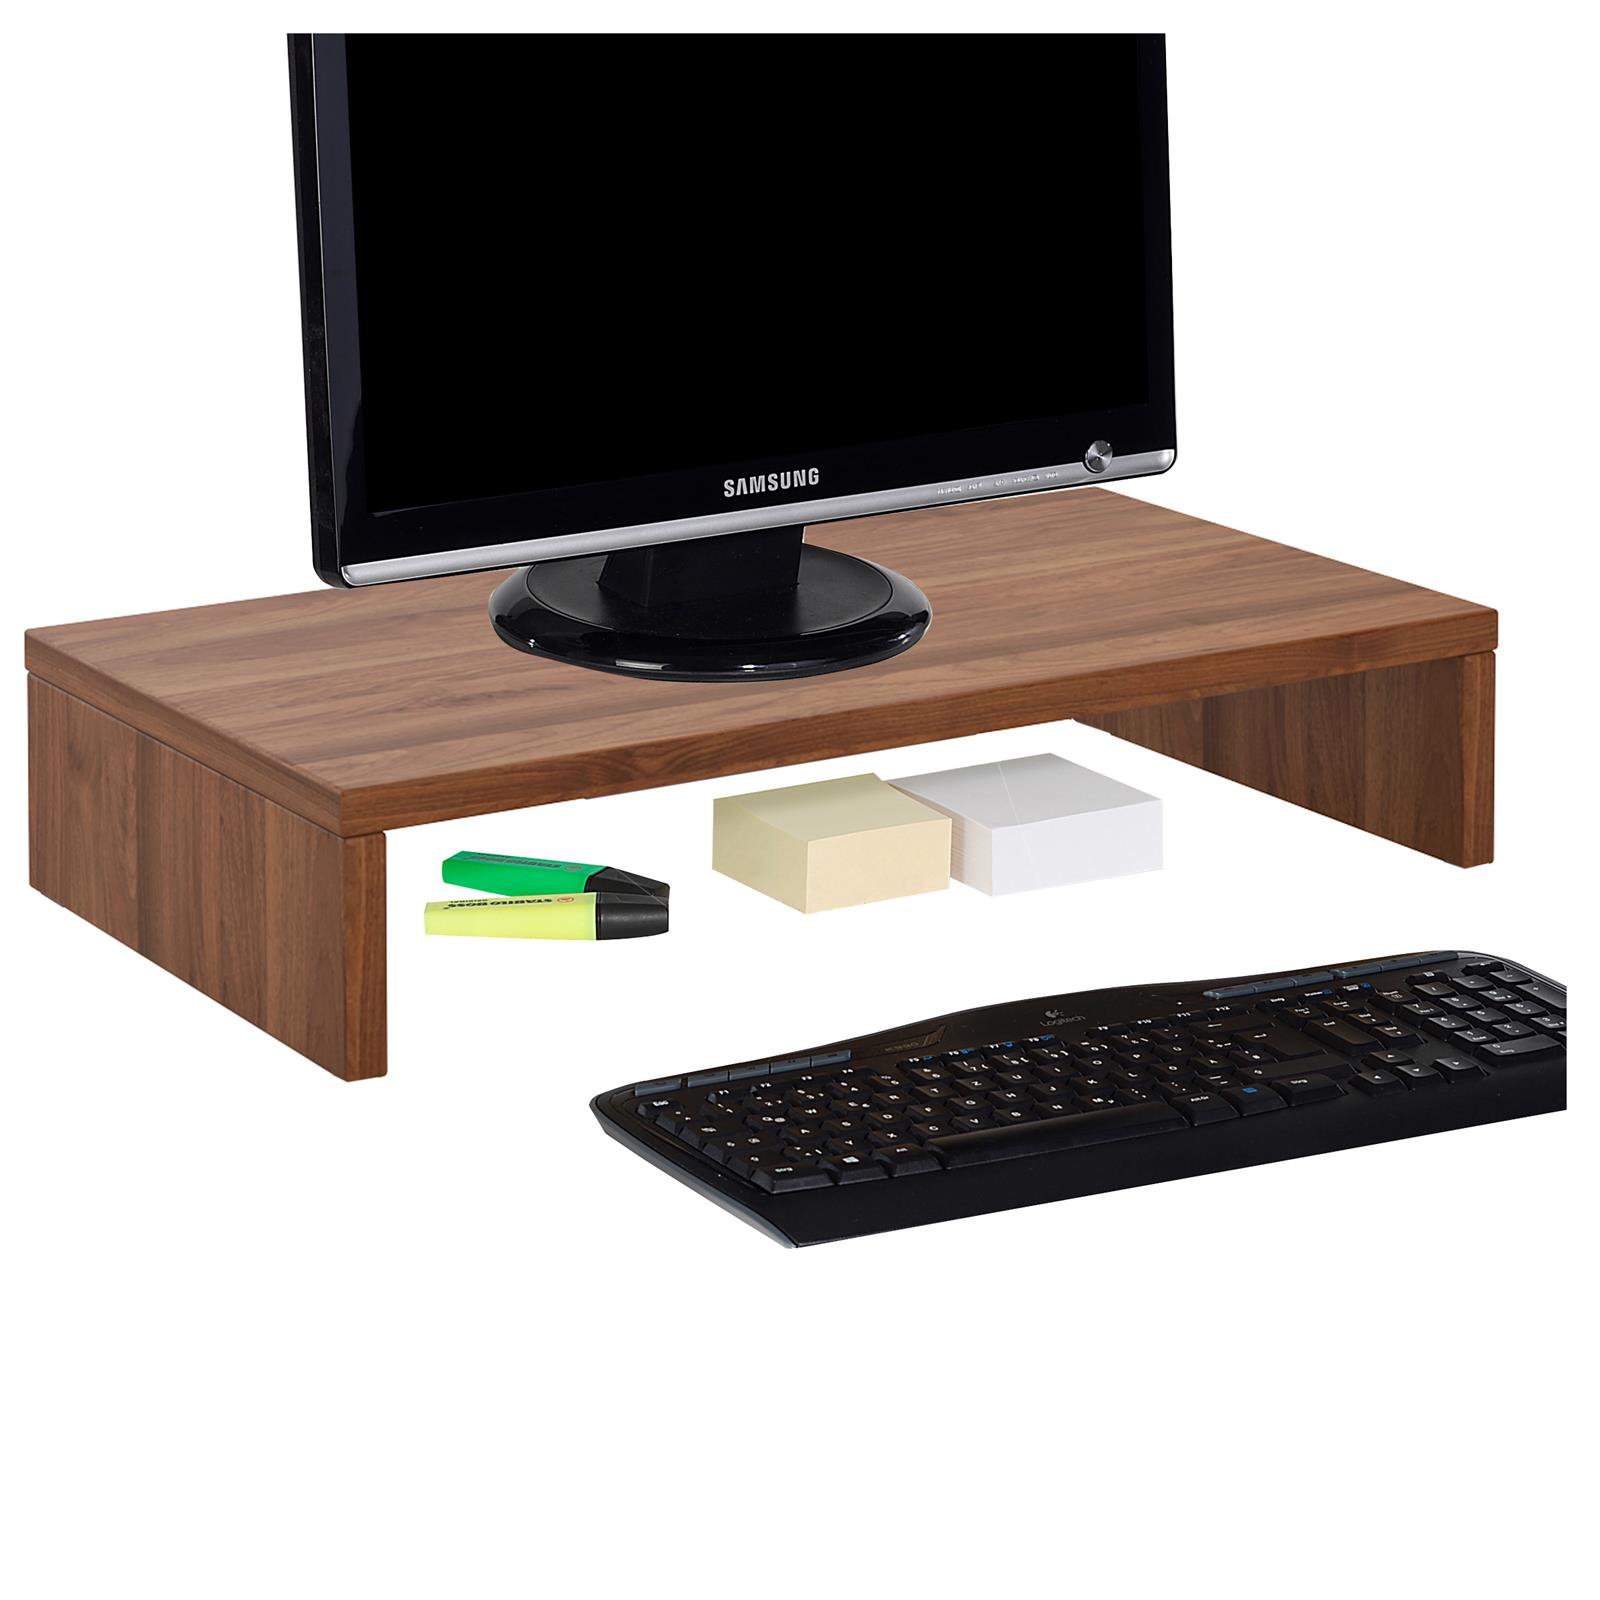 Monitorständer Schreibtischaufsatz Monitorerhöhung Bildschirm Aufsatz | eBay